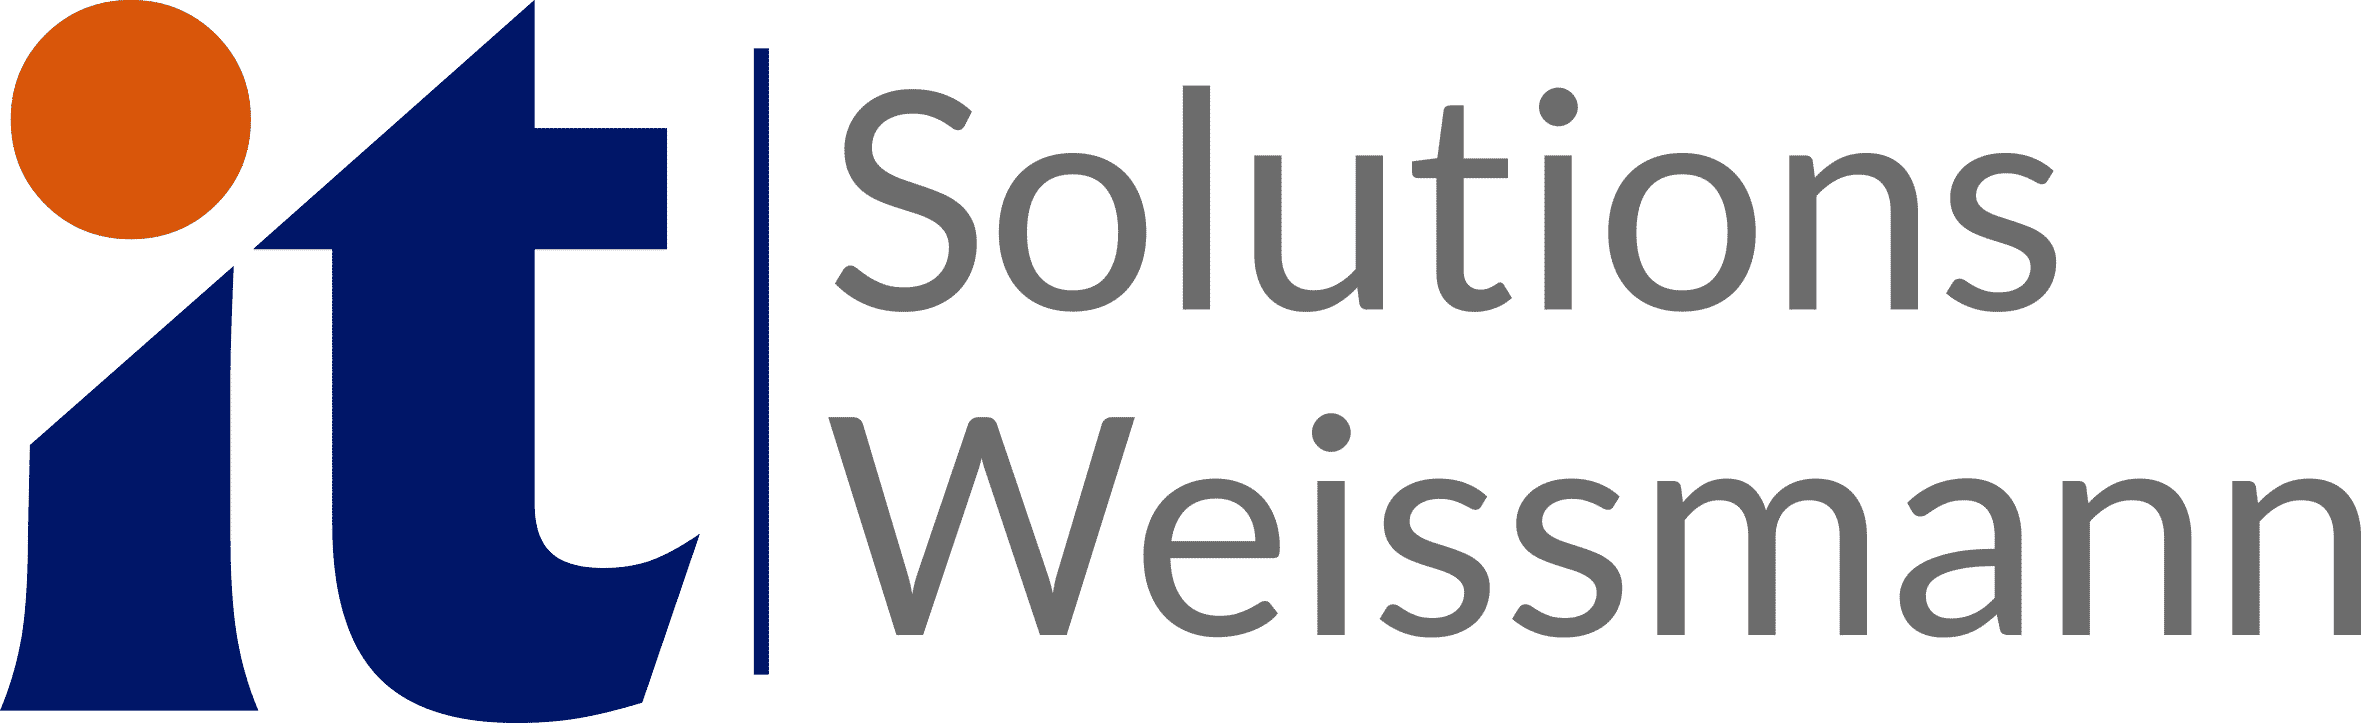 IT Solutions Weissmann